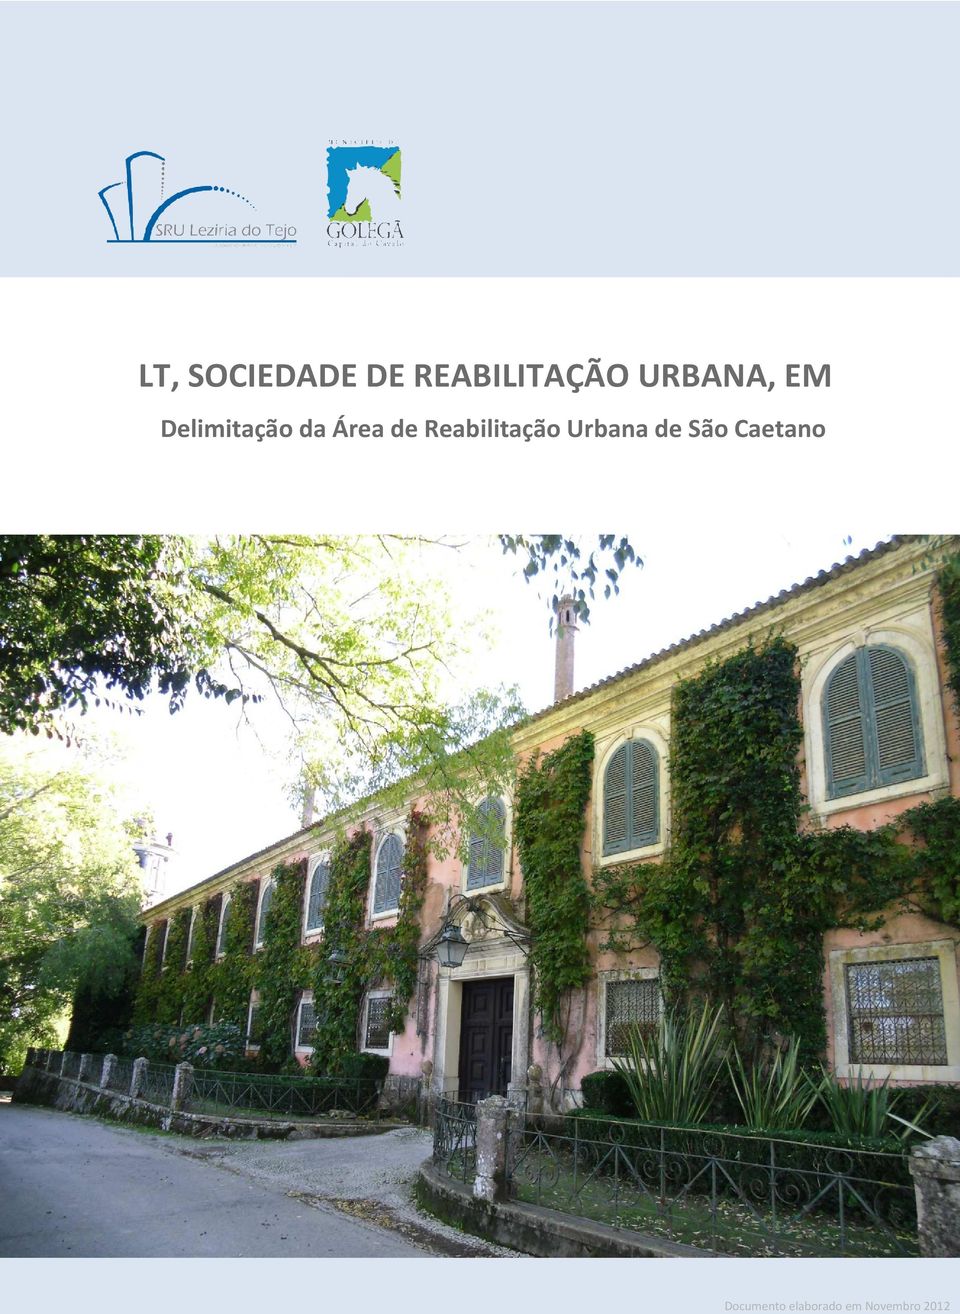 Reabilitação Urbana de São